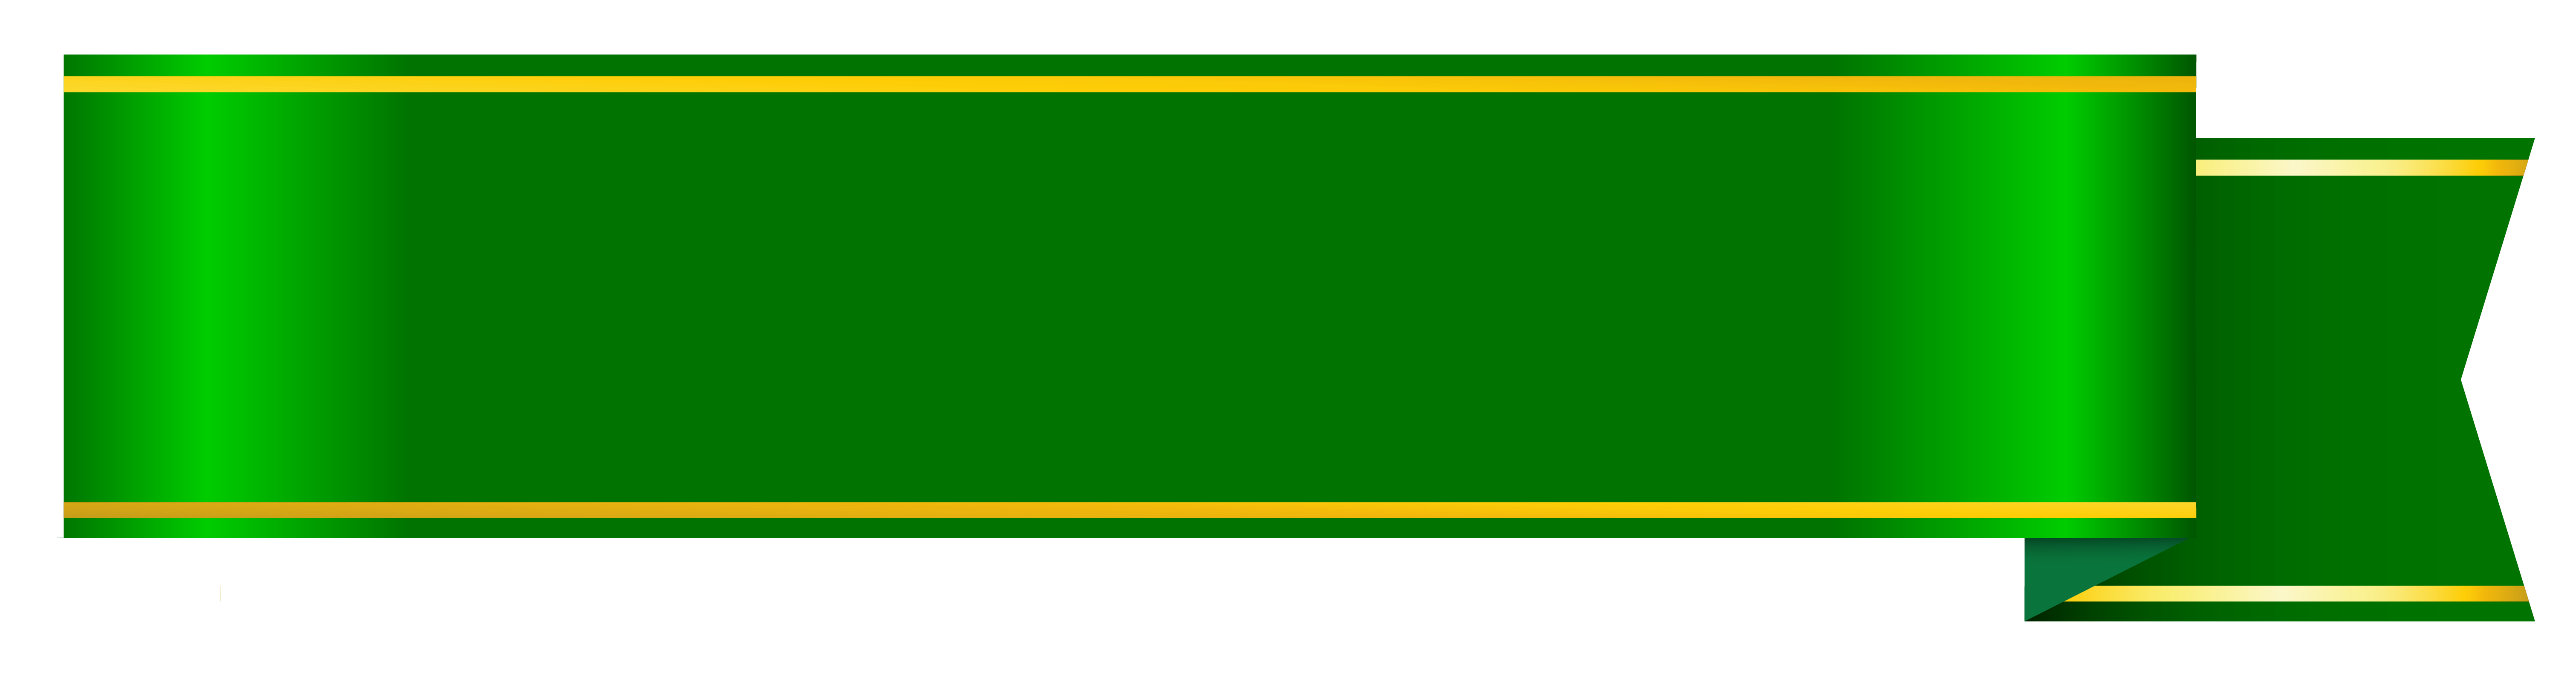 Banner Verde Baixar PNG Image